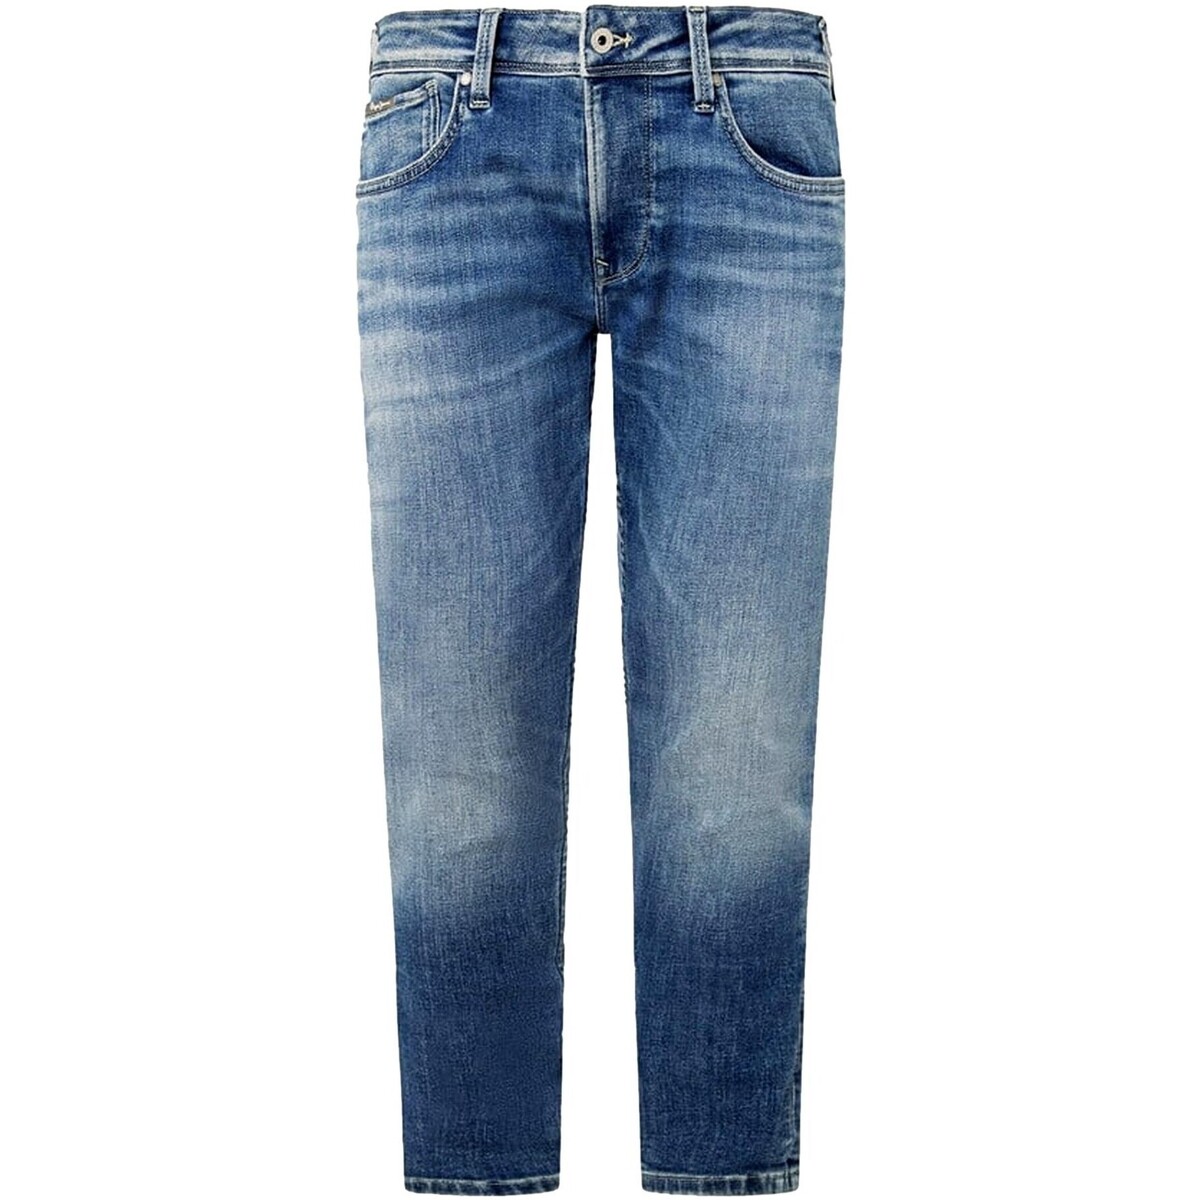 Abbigliamento Uomo Jeans Pepe jeans VAQUERO SKINNY TIRO BAJO   PM207387MI52 Blu